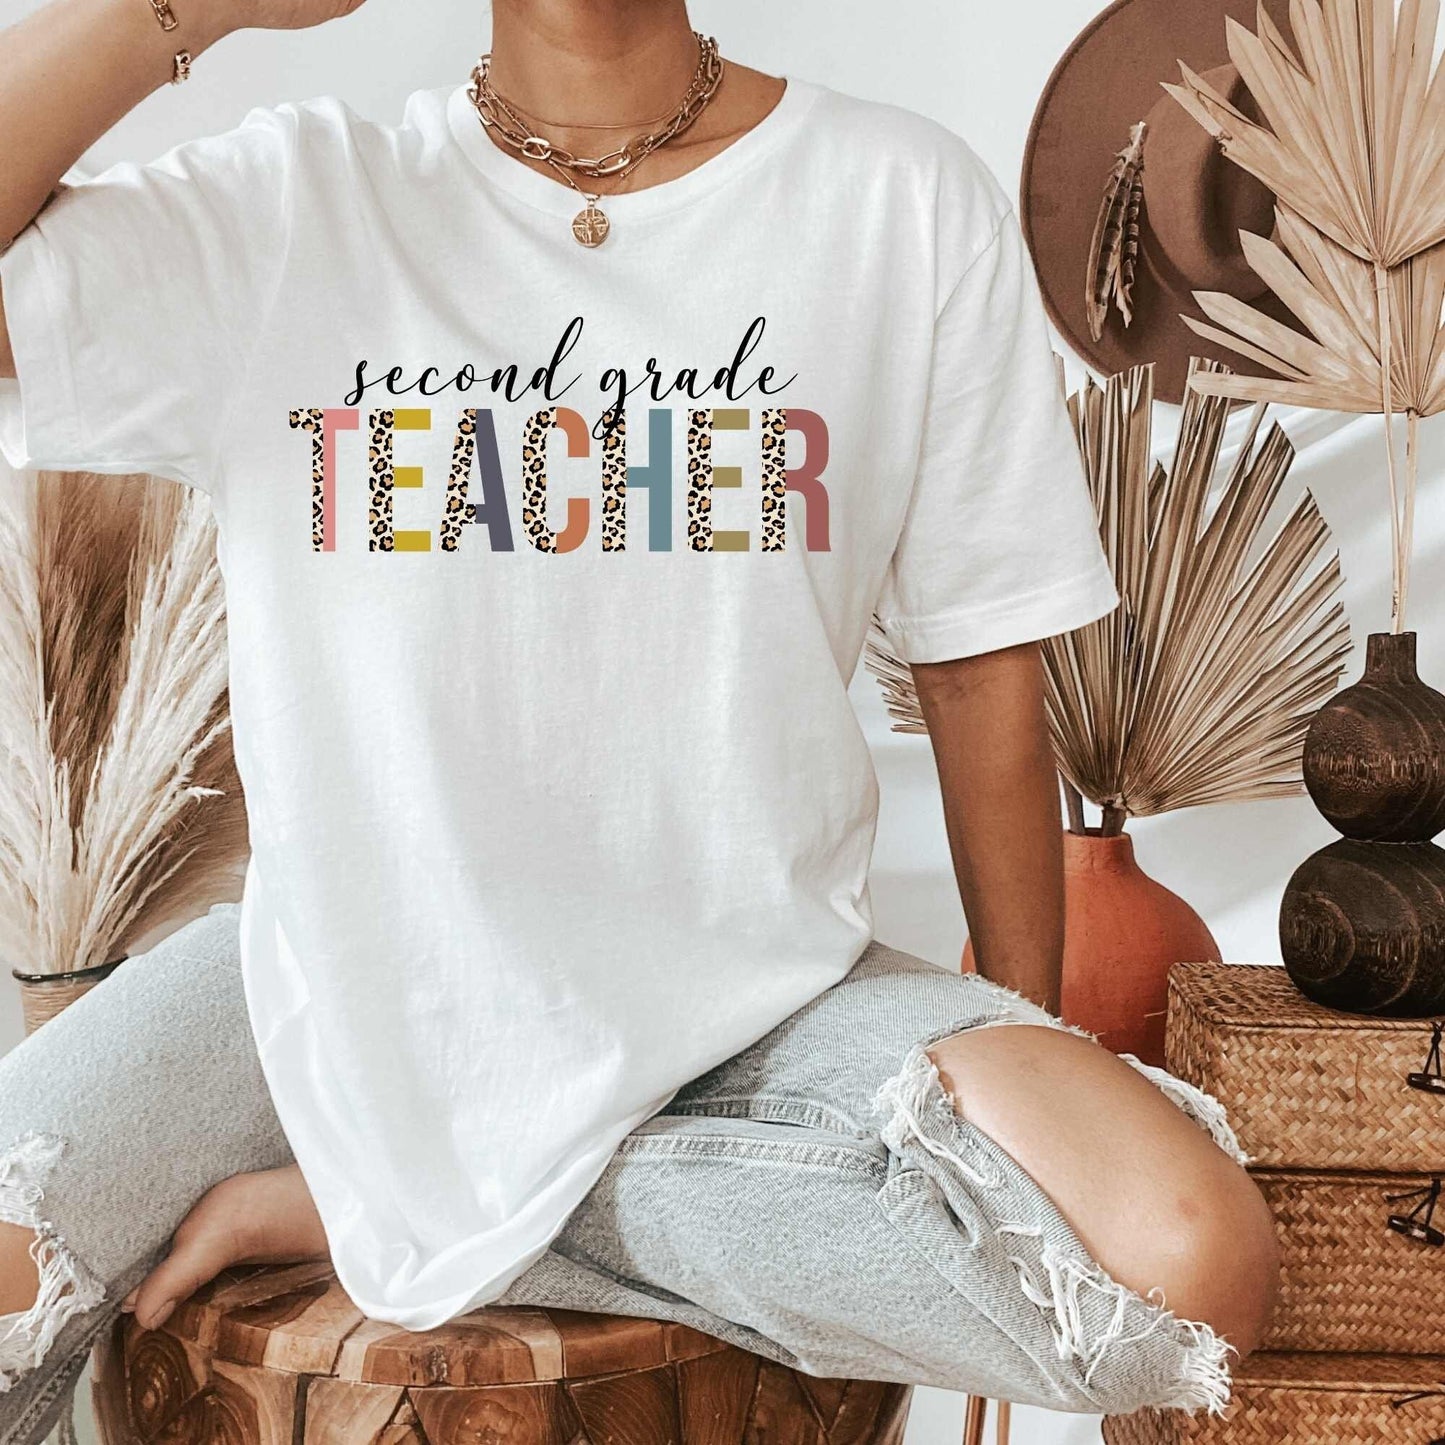 2nd Grade Teacher Shirt, Great for New Teacher, Teacher Teams & Appreciation Gifts